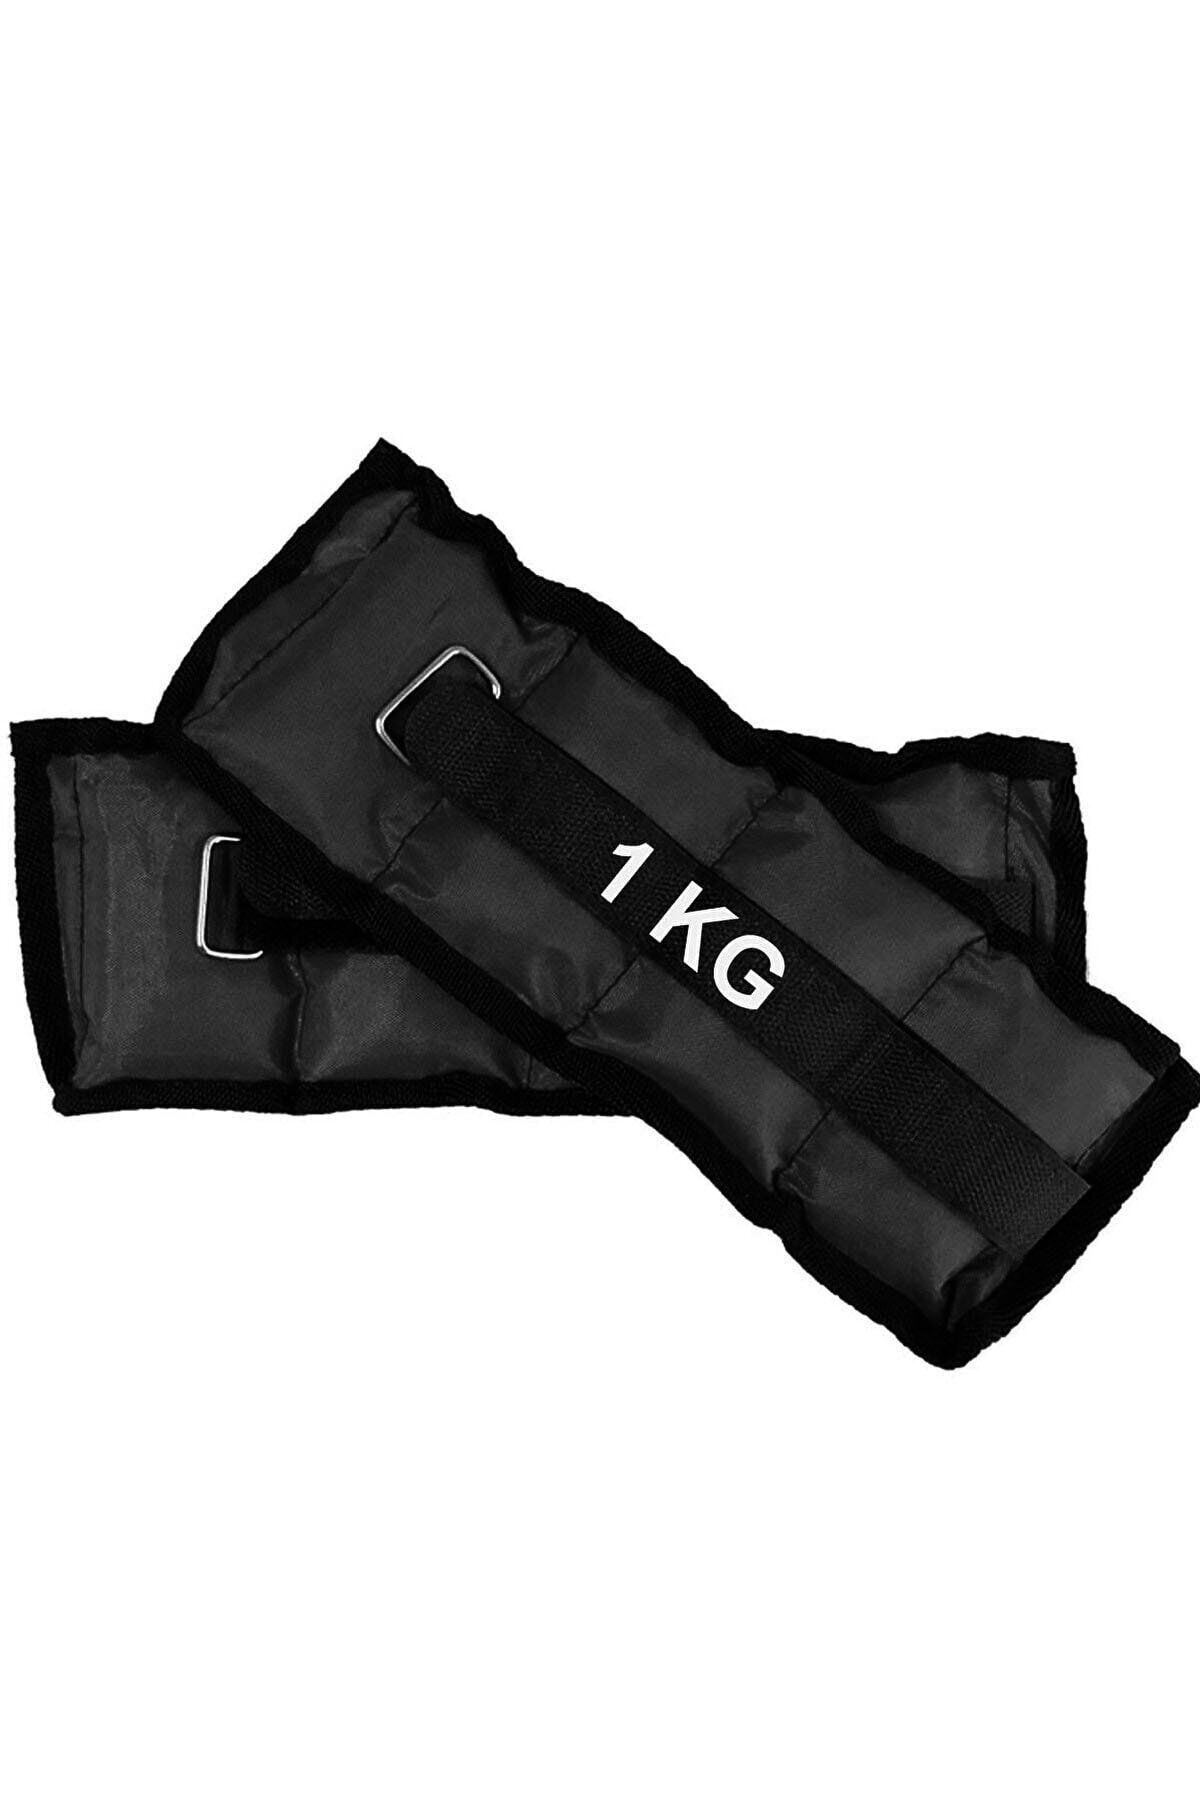 Rotantix El Ve Ayak Bilek Ağırlığı 2x1 Kg Kum Torbası Korsesi Ağırlık Kas Güçlendirmek Pilates 1kg Siyah Set